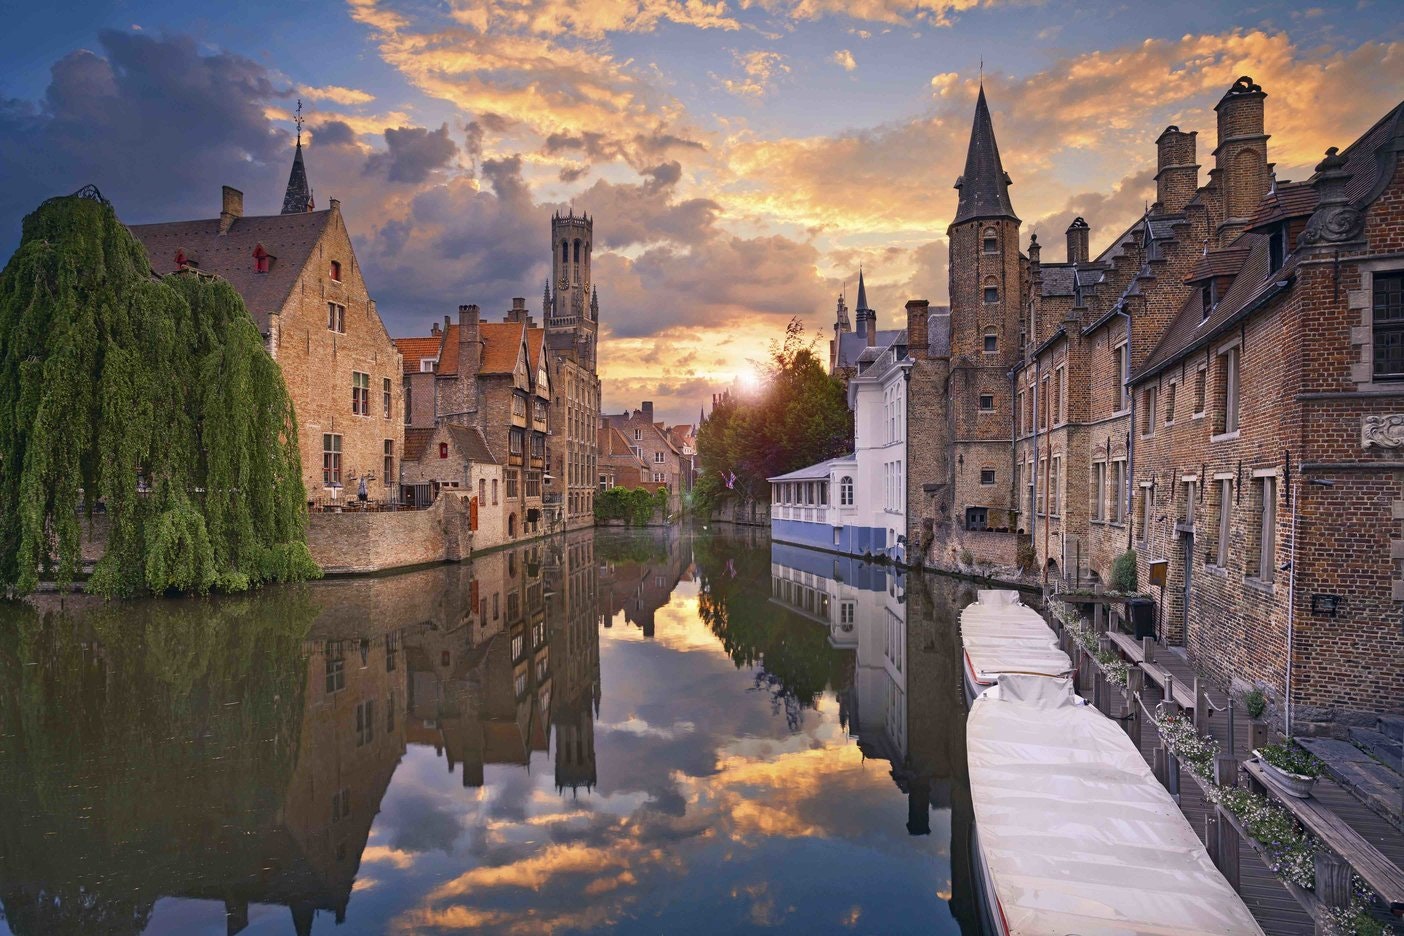 Travel News - Bruges Overtourism